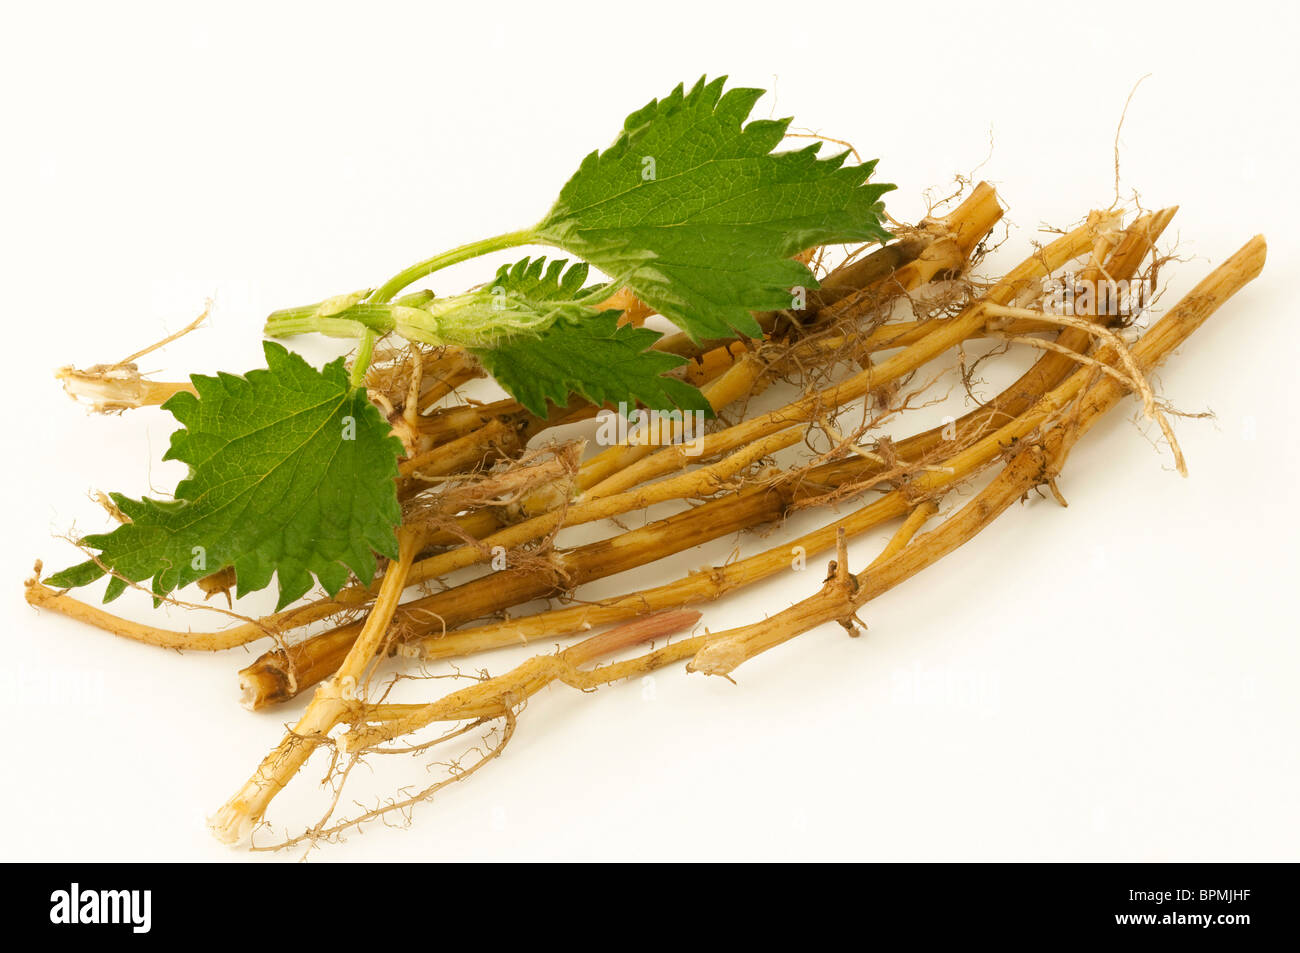 L'ortie (Urtica dioica), couper les racines et les feuilles, studio photo sur un fond blanc. Banque D'Images